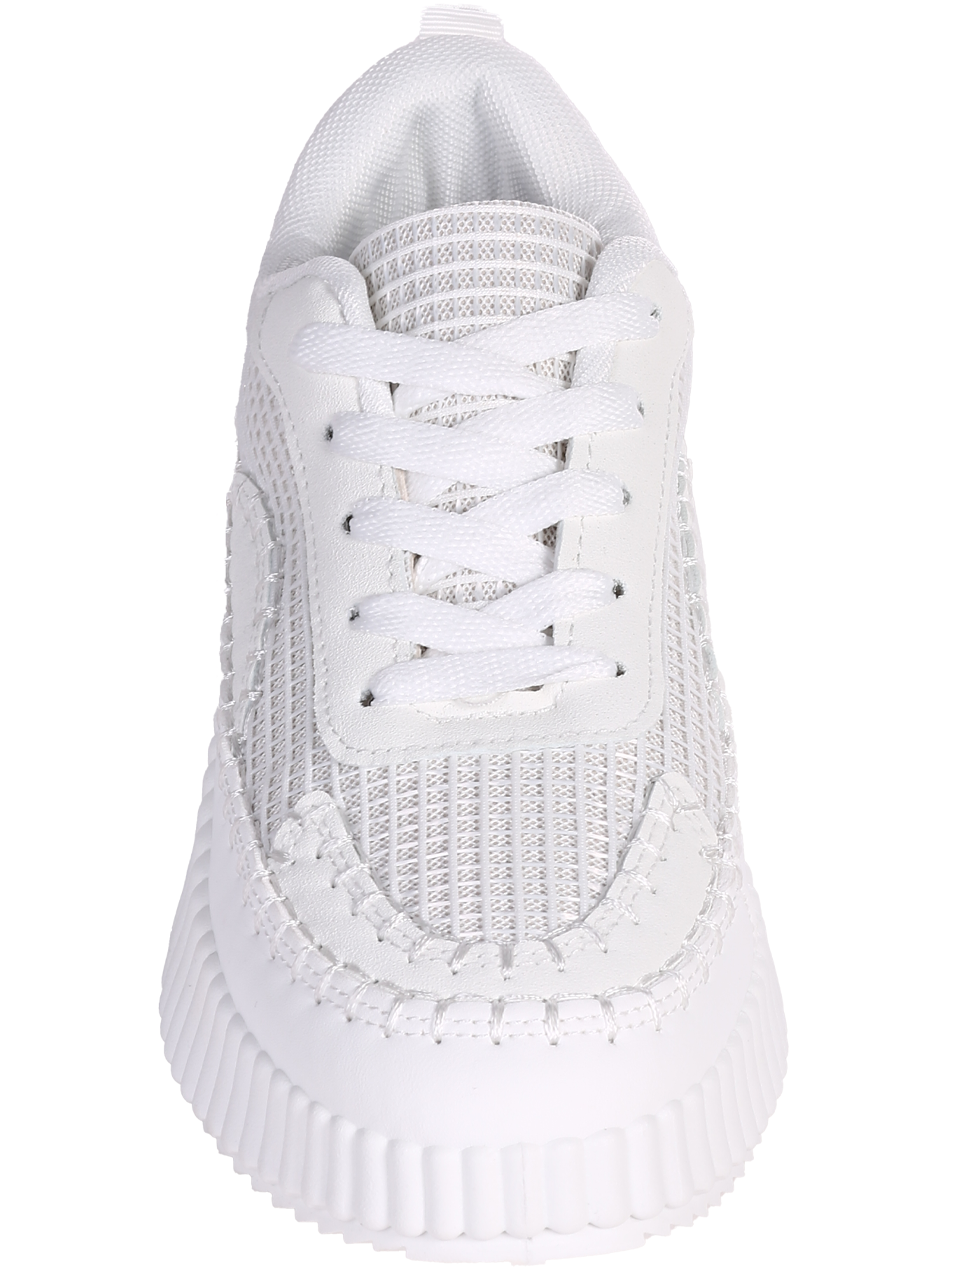 Ежедневни обувки от текстил в бяло 3U-24079 white